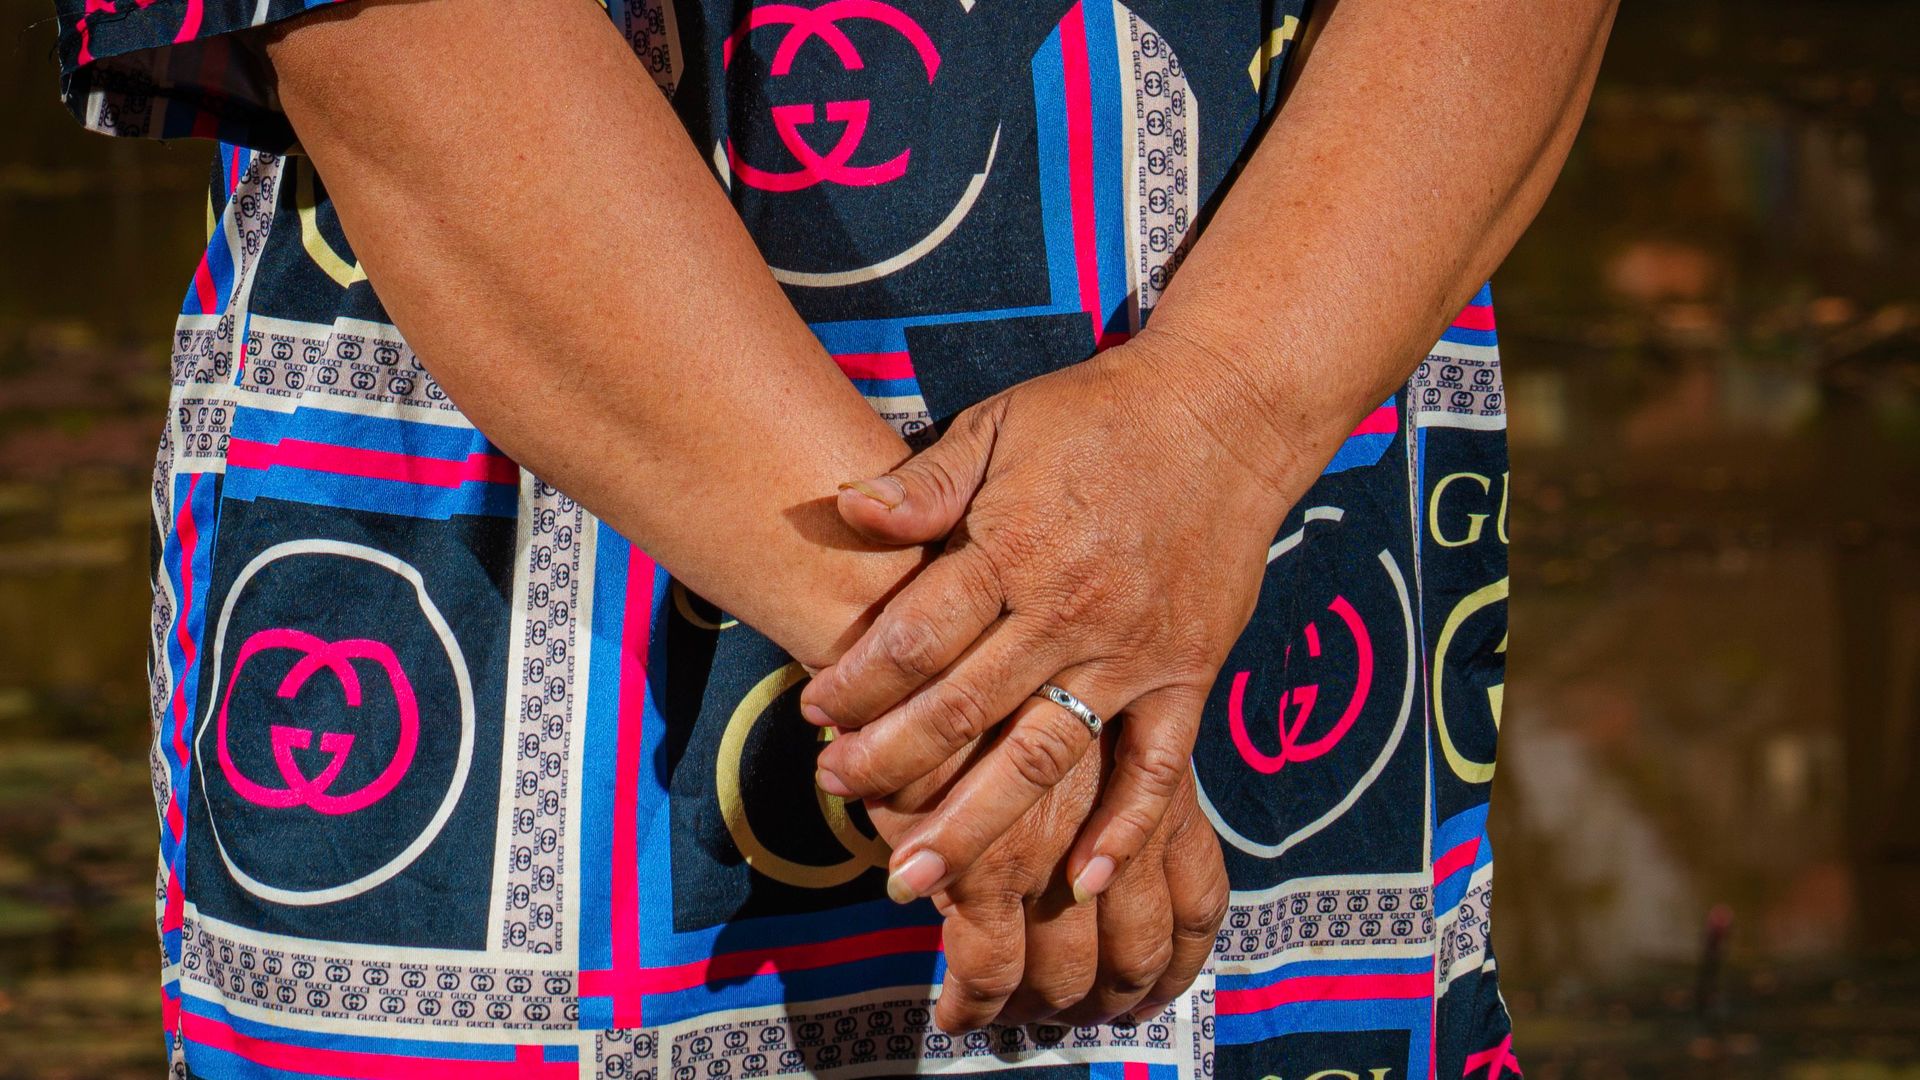 fotoprojekt in südostasien über gefälschte kleidung: die armen tragen gucci